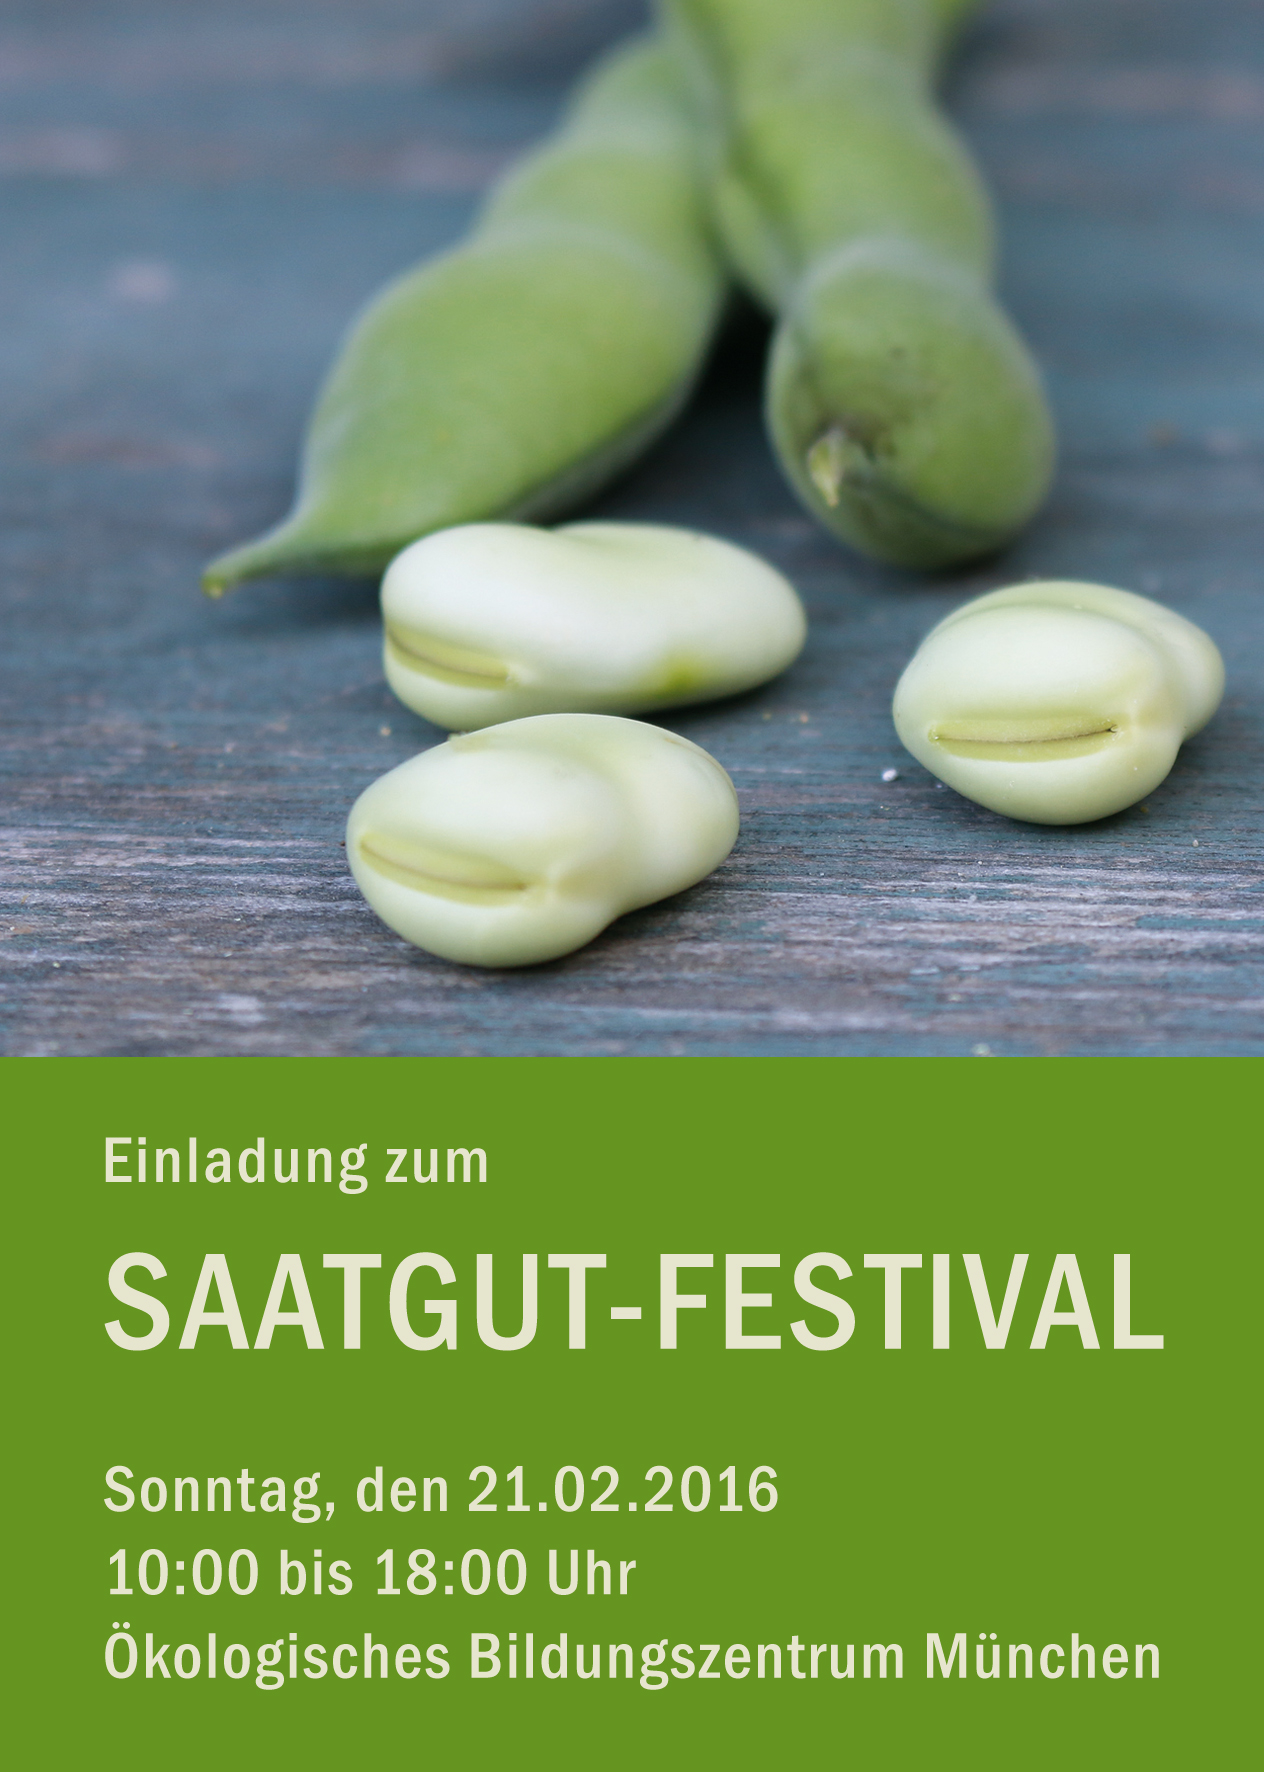 Saatgut-Festival 2016